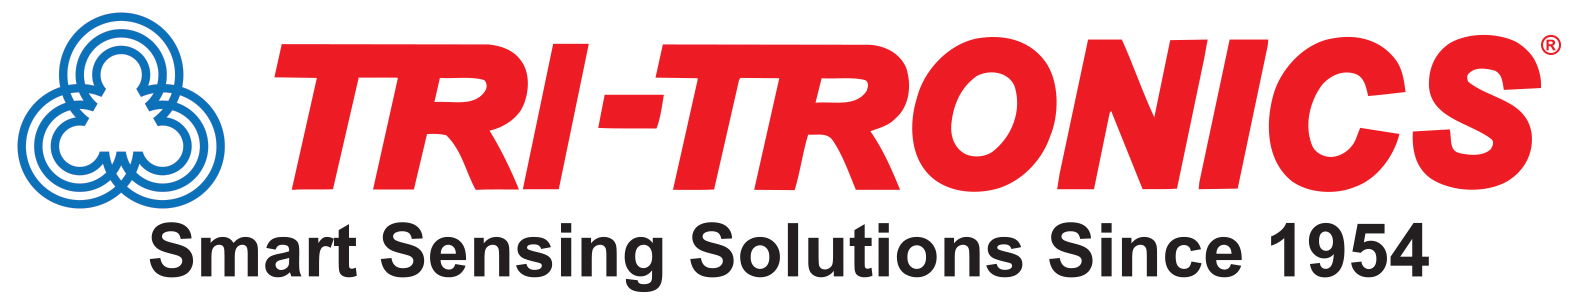 Tri-Tronics Company, Inc.